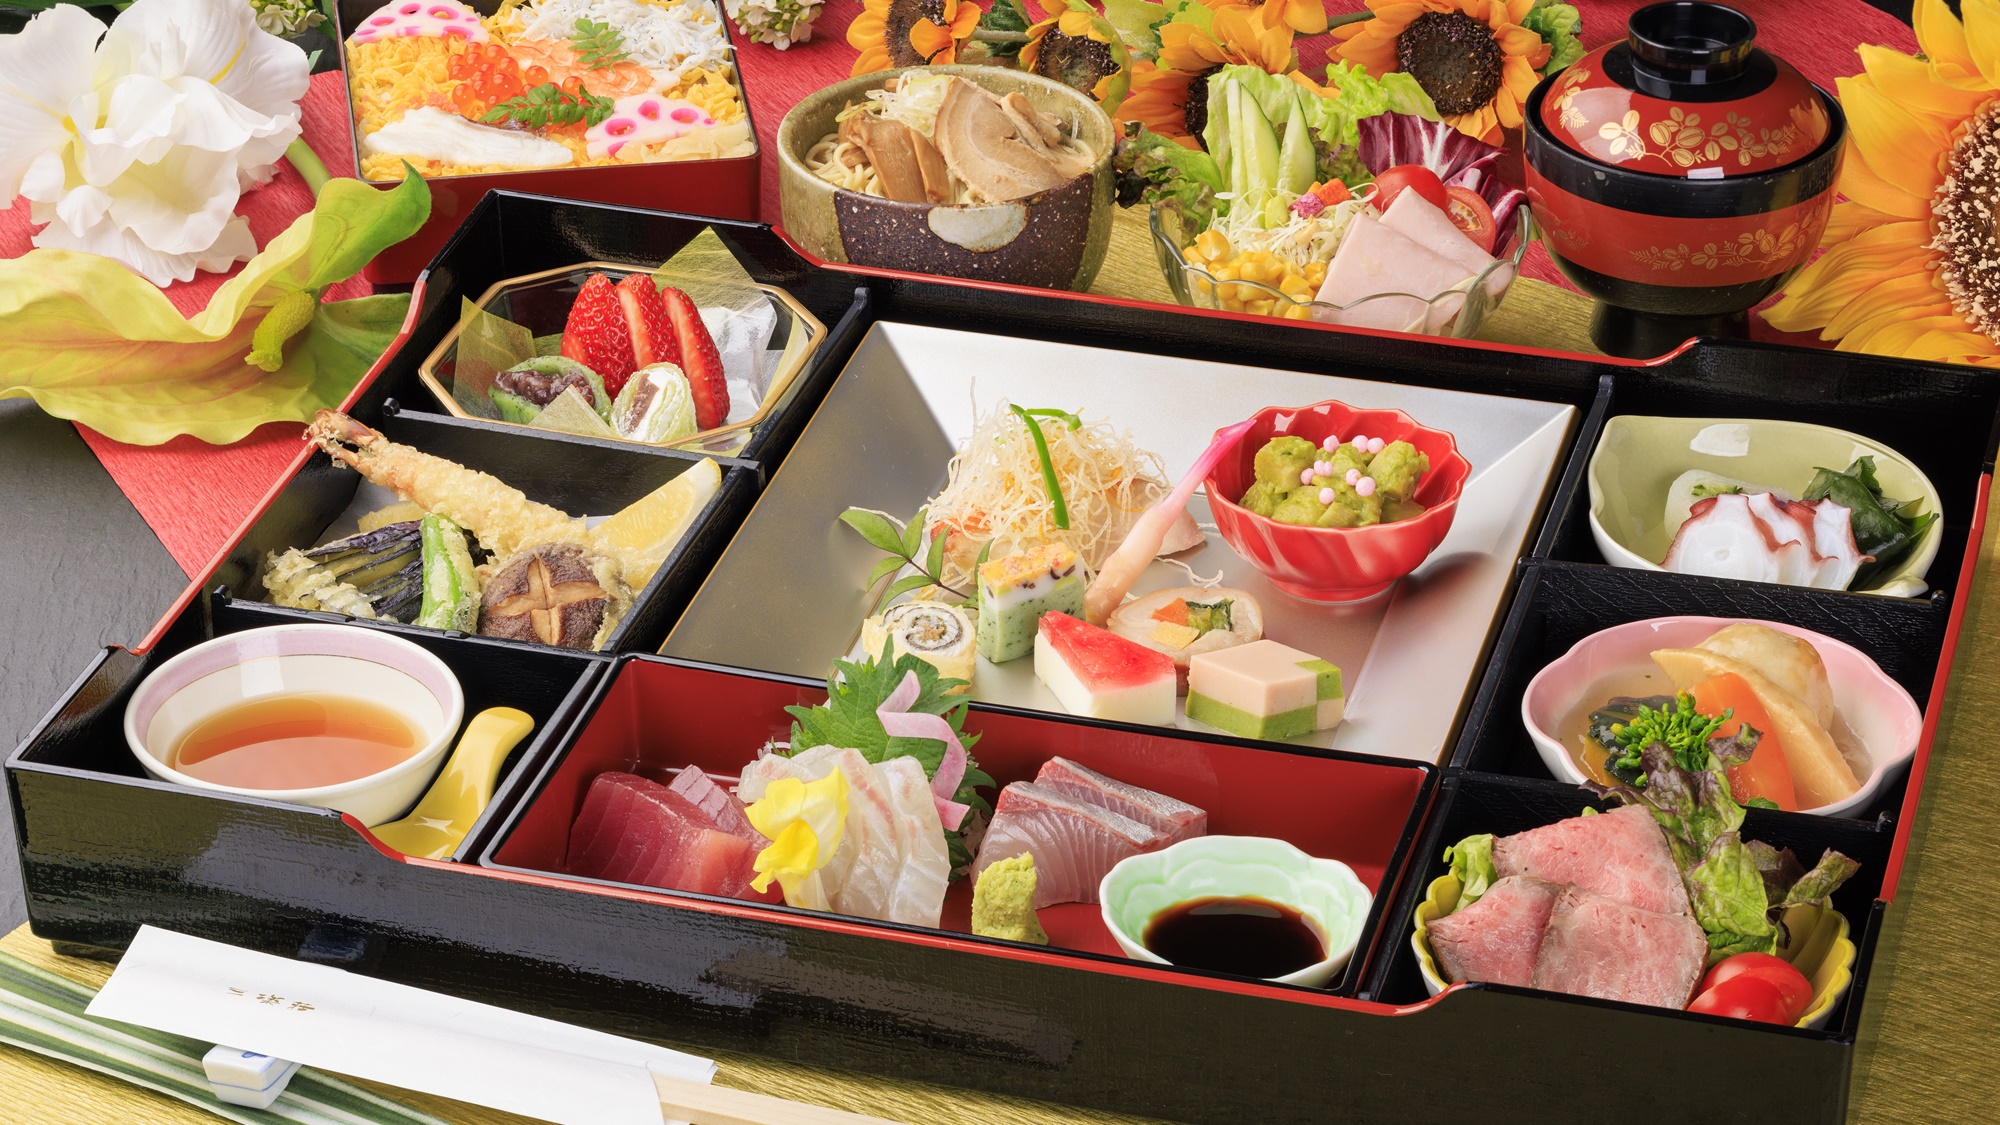 *【しらら膳】近海マグロなど和歌山の食材が詰まった松花堂をレストランにてご準備。